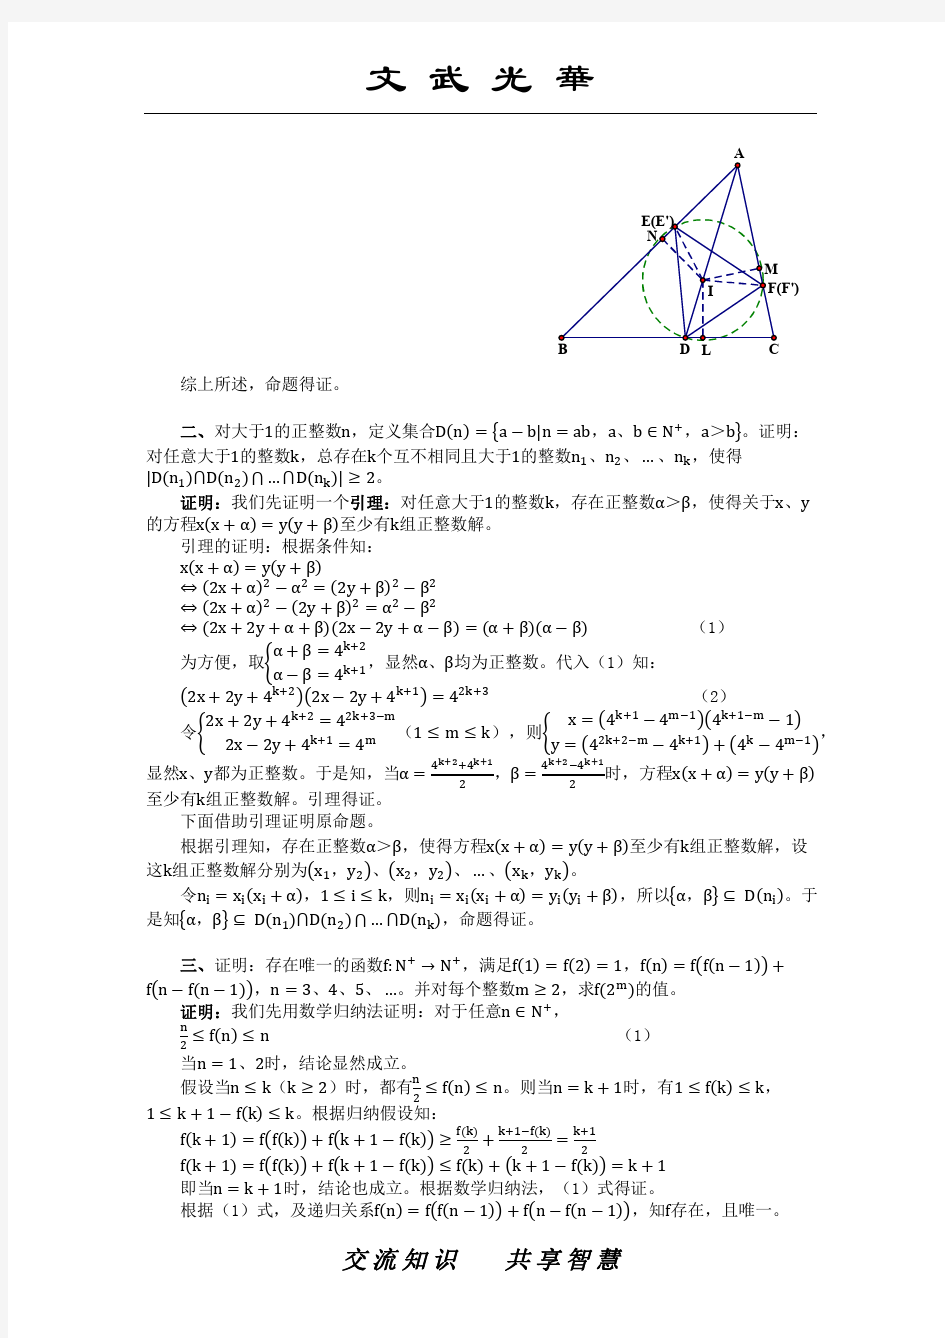 中国数学奥林匹克 CMO 试题及其解答 